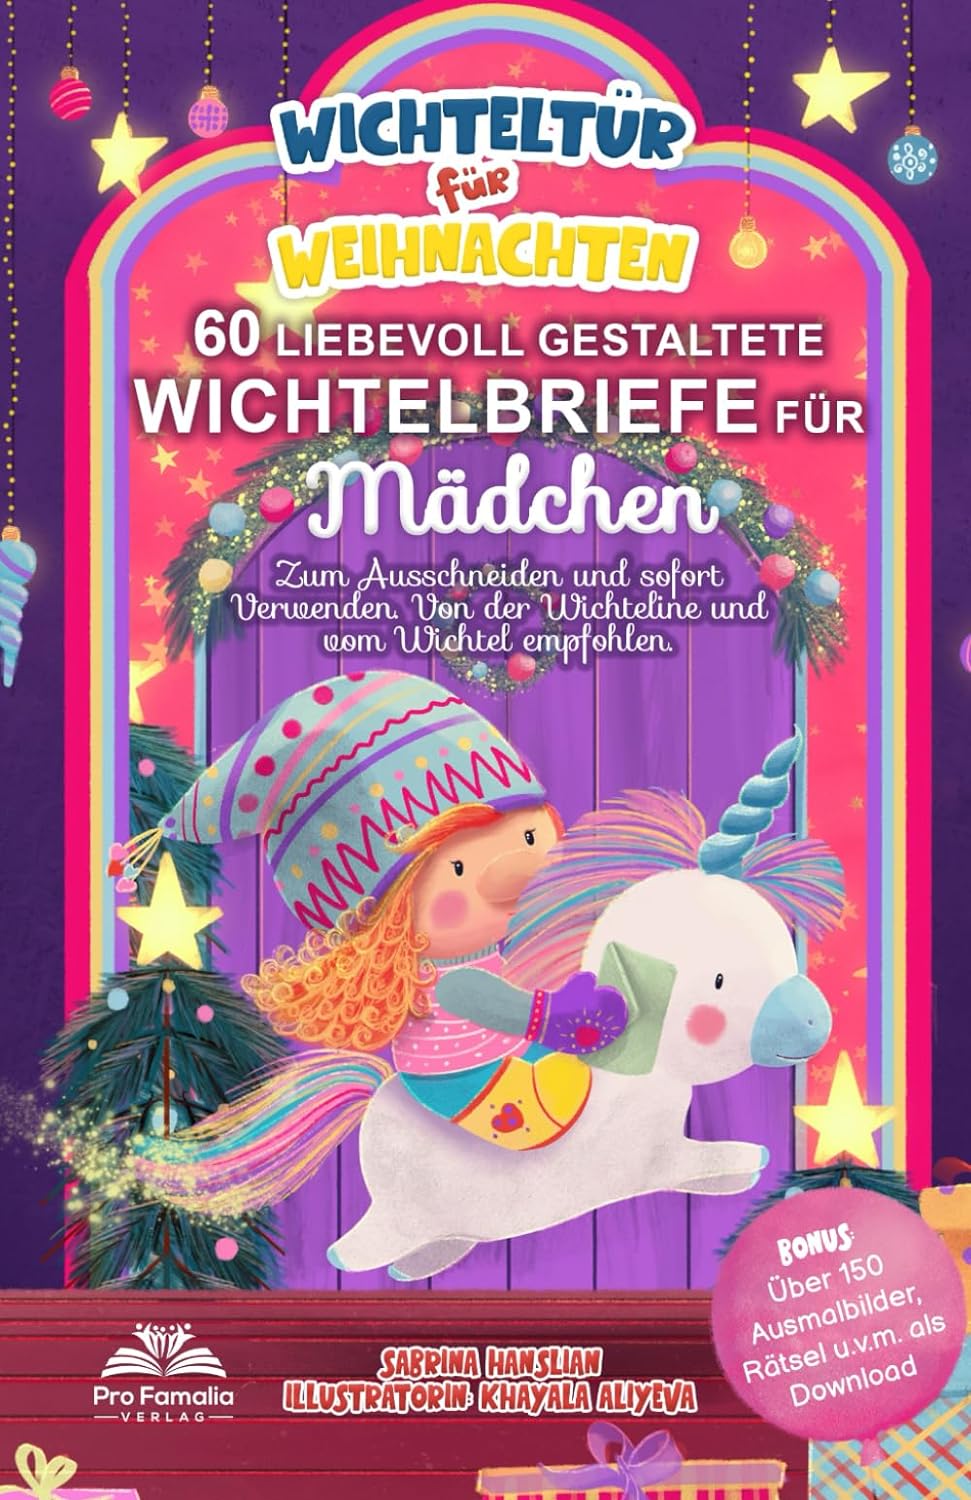 Wichteltür für Weihnachten: 60 liebevoll gestaltete Wichtelbriefe für Mädchen - Zum Ausschneiden und sofort Verwenden. Von der Wichteline und vom Wichtel...